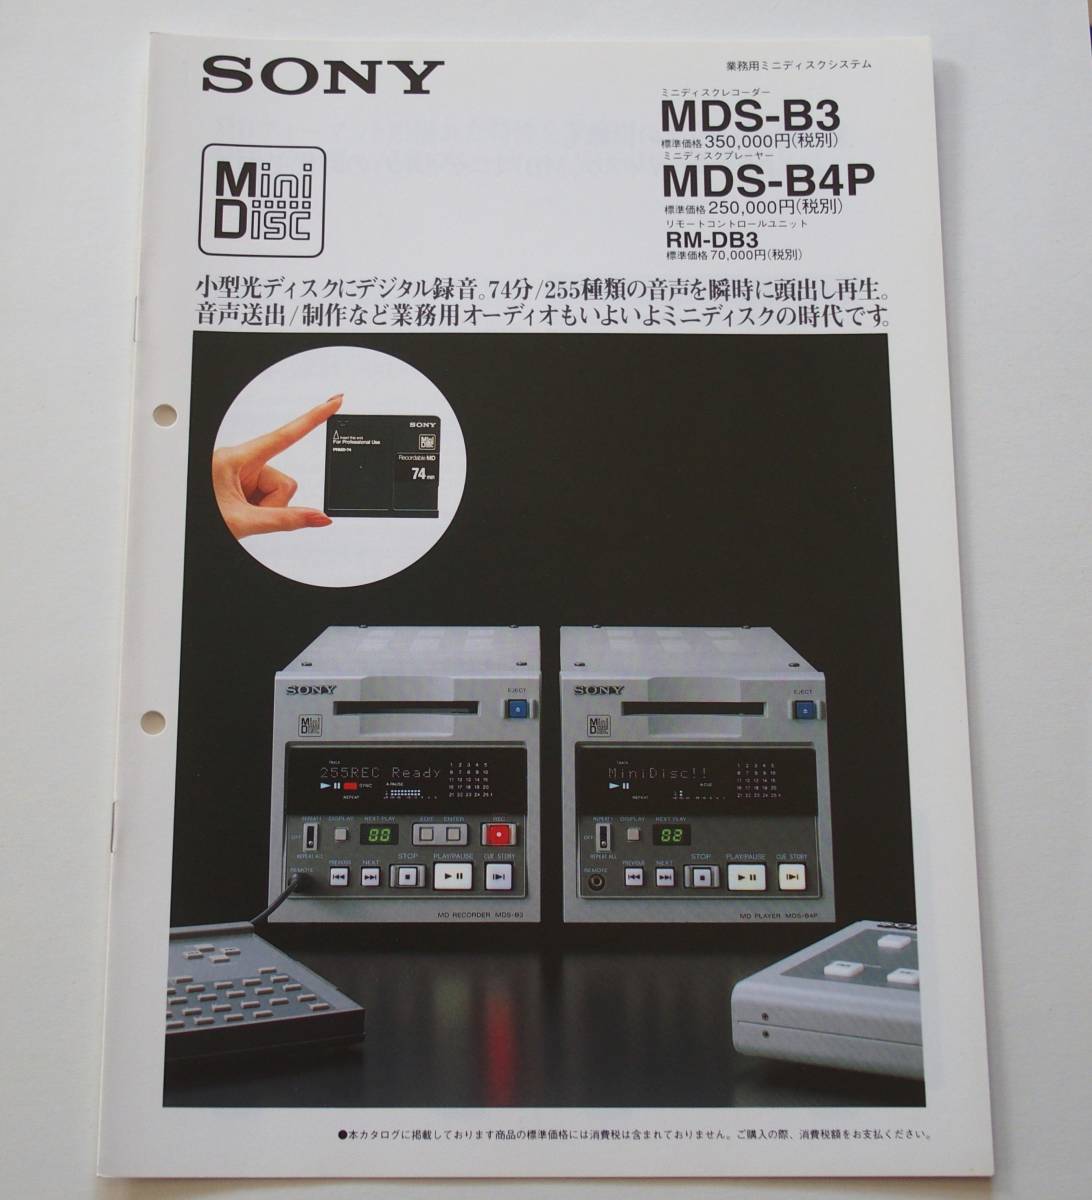 【カタログ】「SONY 業務用ミニディスクシステム MDS-B3 / MDS-B4P カタログ」(1995年10月)　業務用MDレコーダー/プレーヤー カタログ_画像1